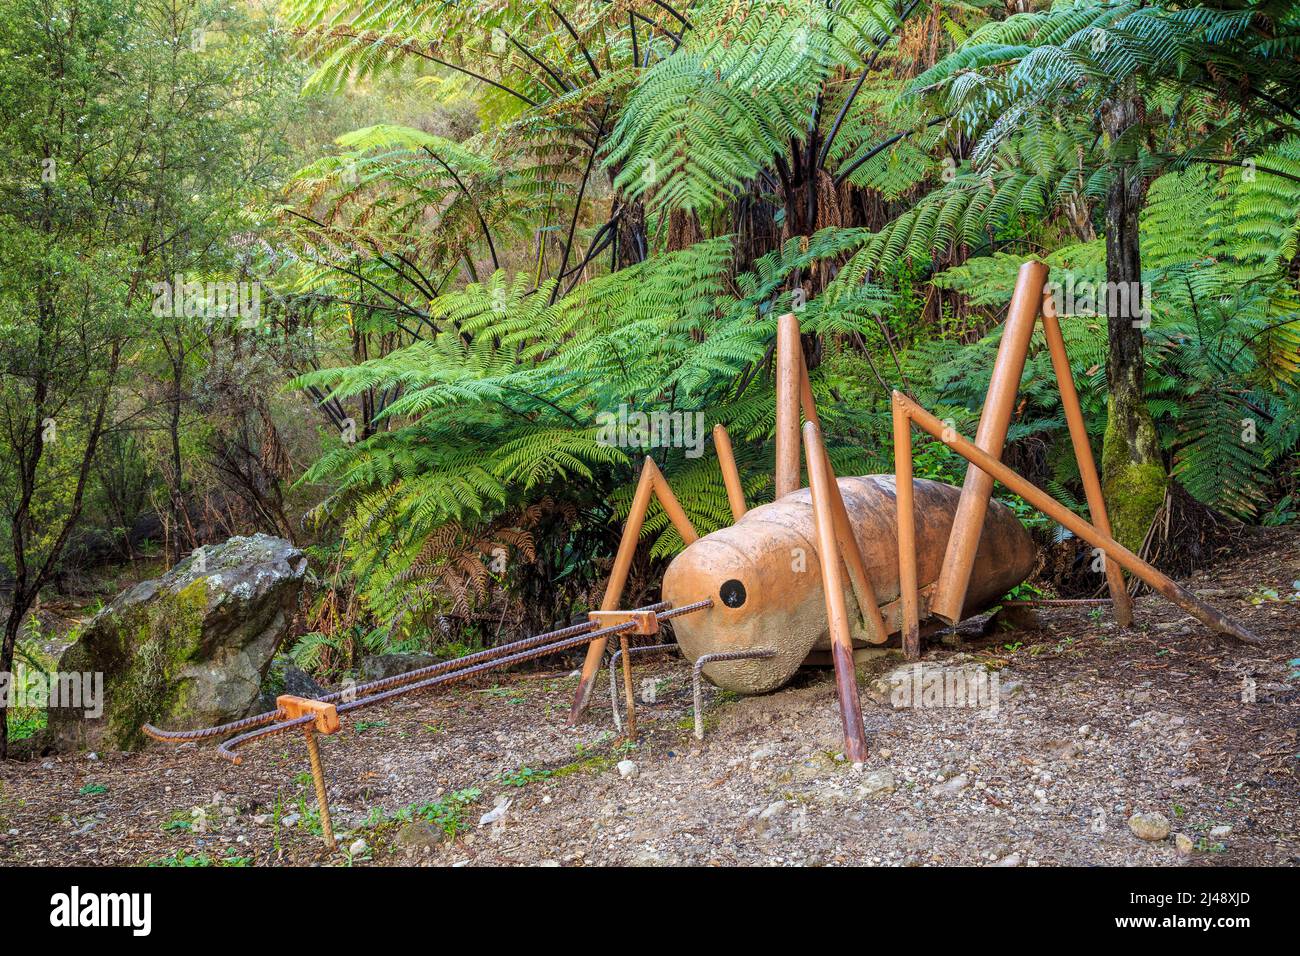 Une sculpture métallique d'un weta (un insecte néo-zélandais) dans le parc de la carrière te Puna, te Puna, Nouvelle-Zélande Banque D'Images